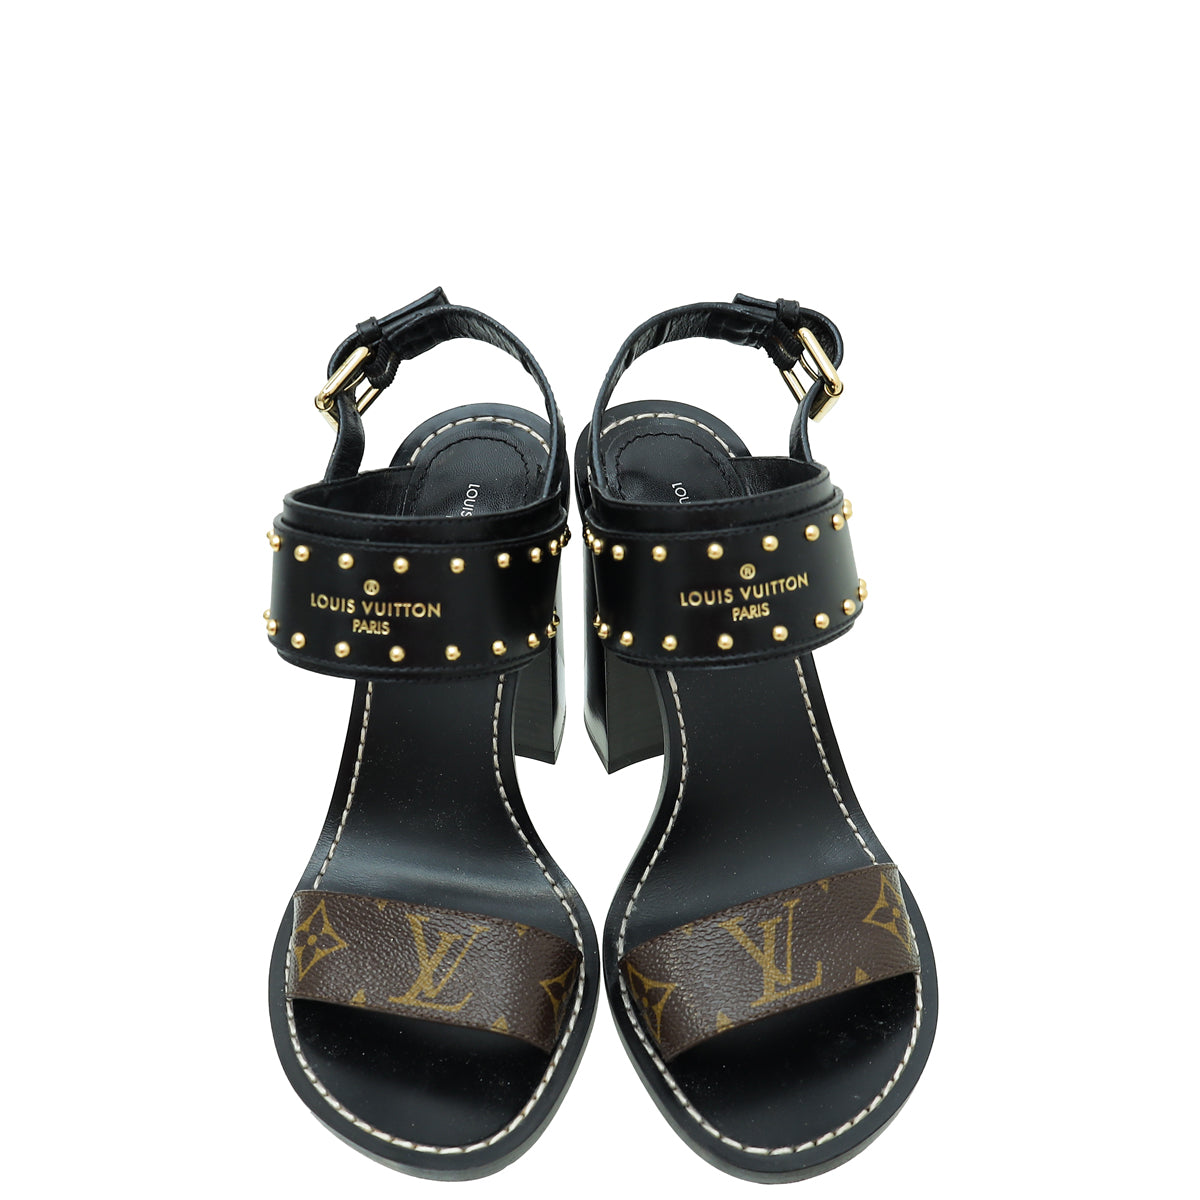 Nomad Sandals Louis Vuitton Cheap